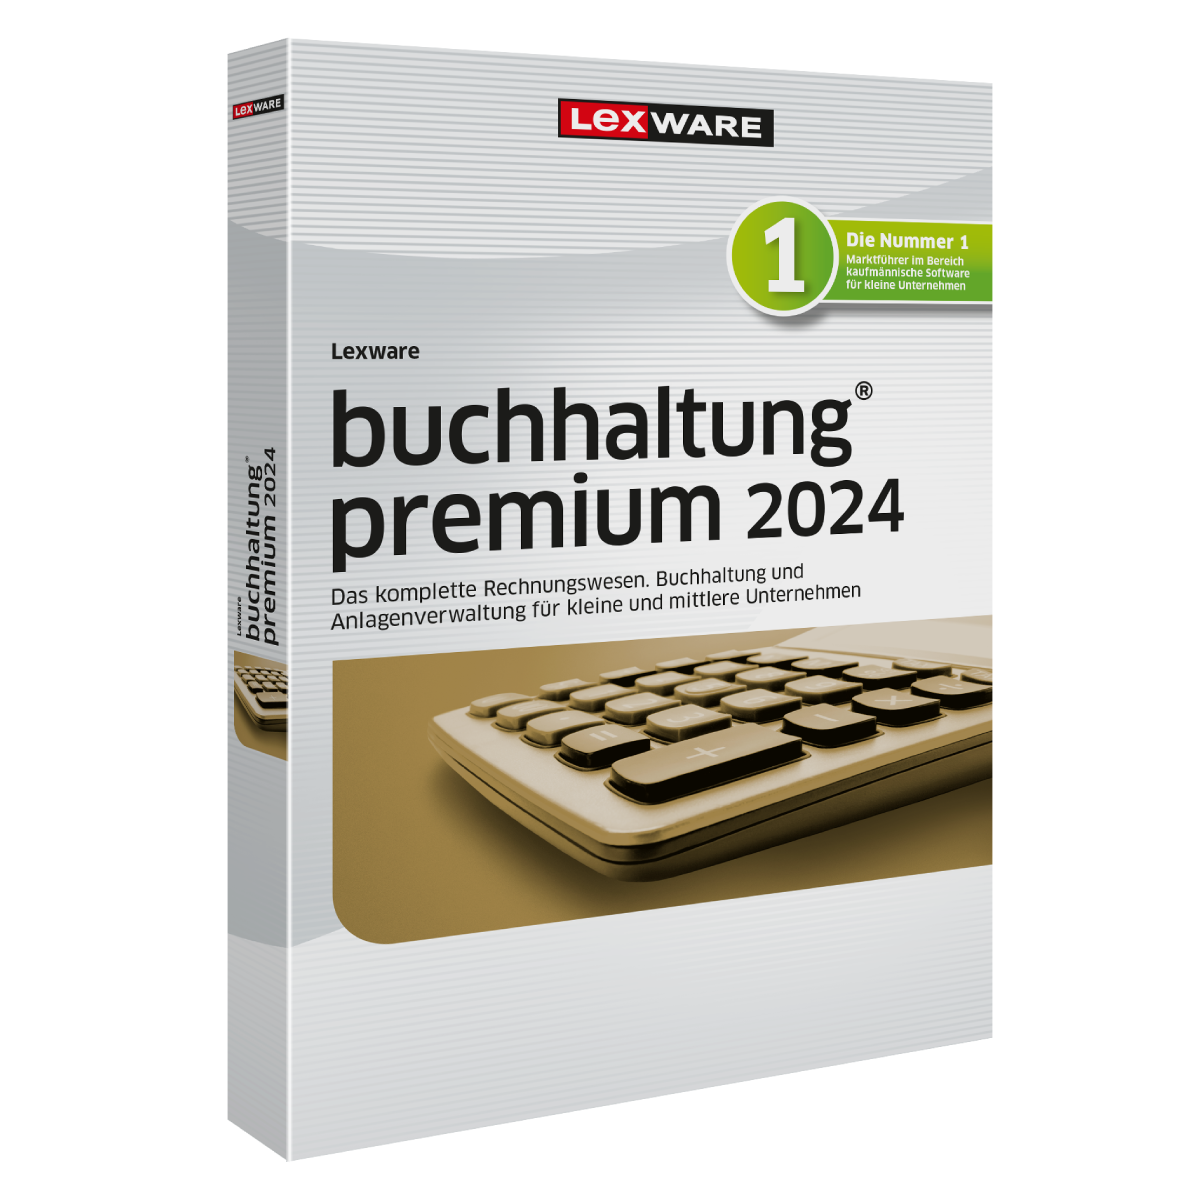 LEXWARE buchhaltung premium 2024 - Abo [Download]